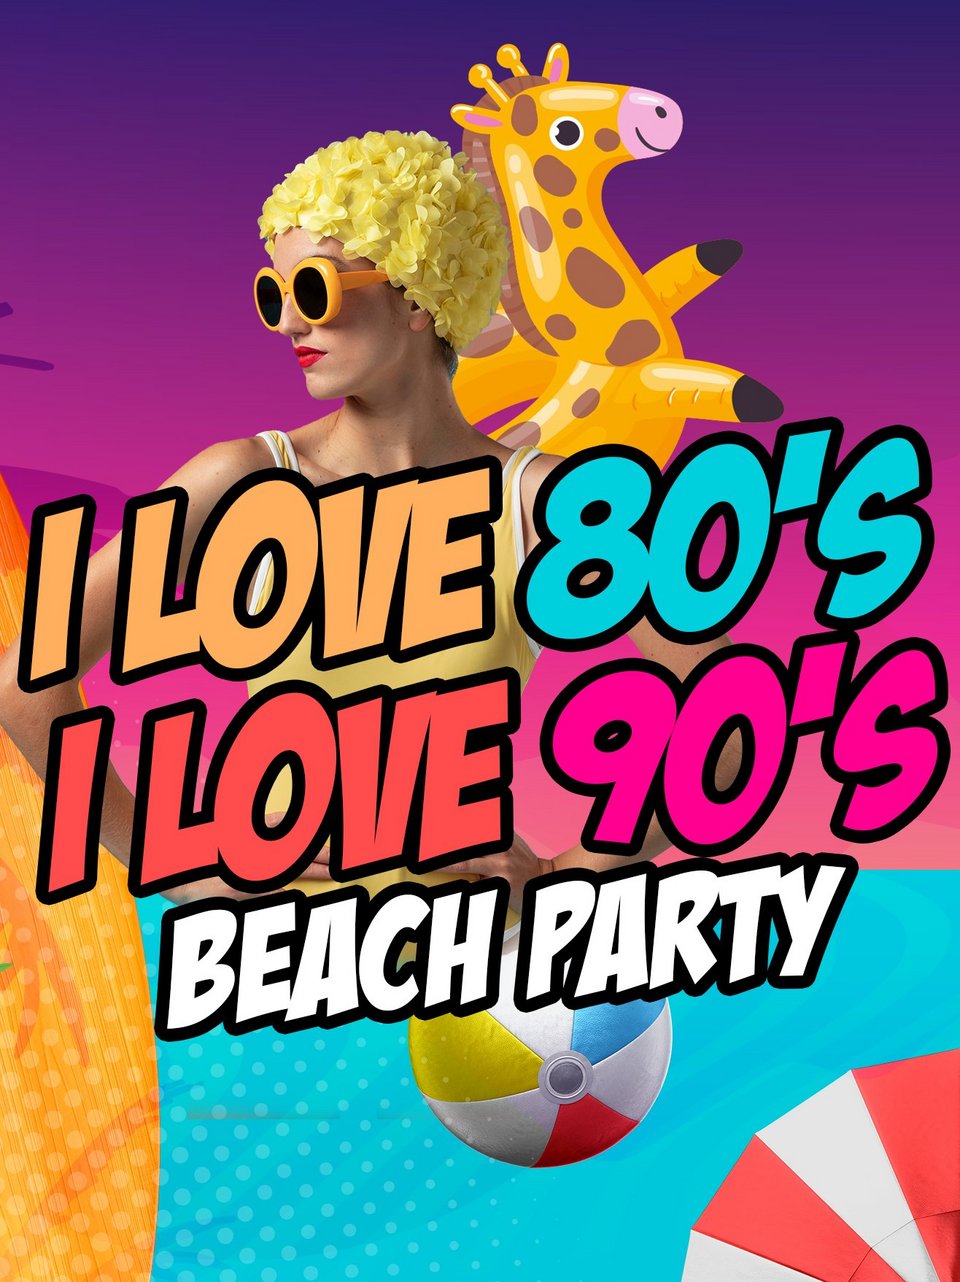 I LOVE 80's & I LOVE 90's BEACH PARTY 